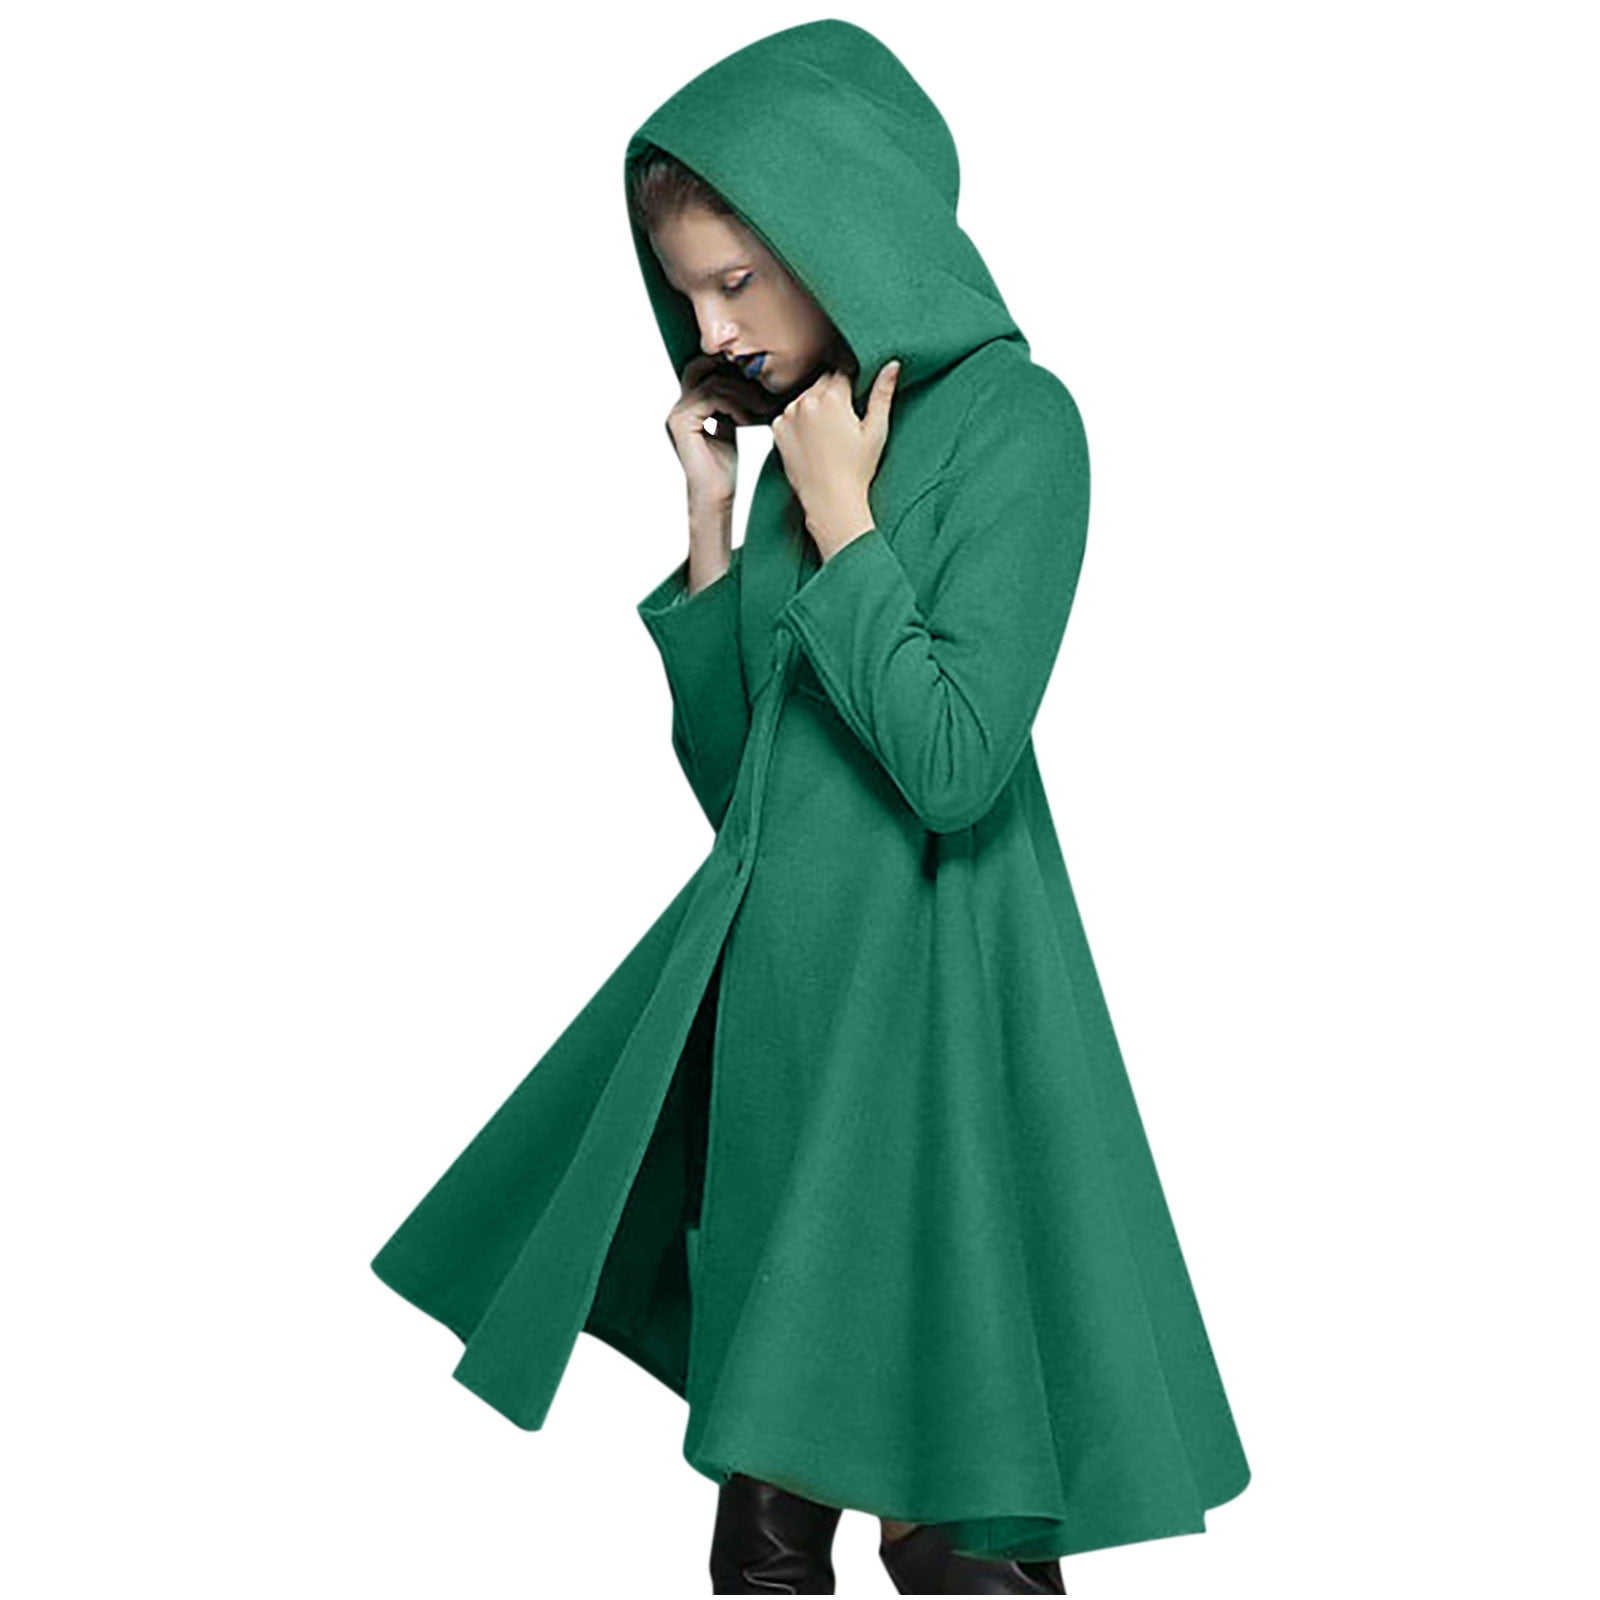 XFLWAM Women Hooded Wool Pea Coat Warm Winter Long Swing Trench Coat  Overcoat Jacket with Pocket Green XL